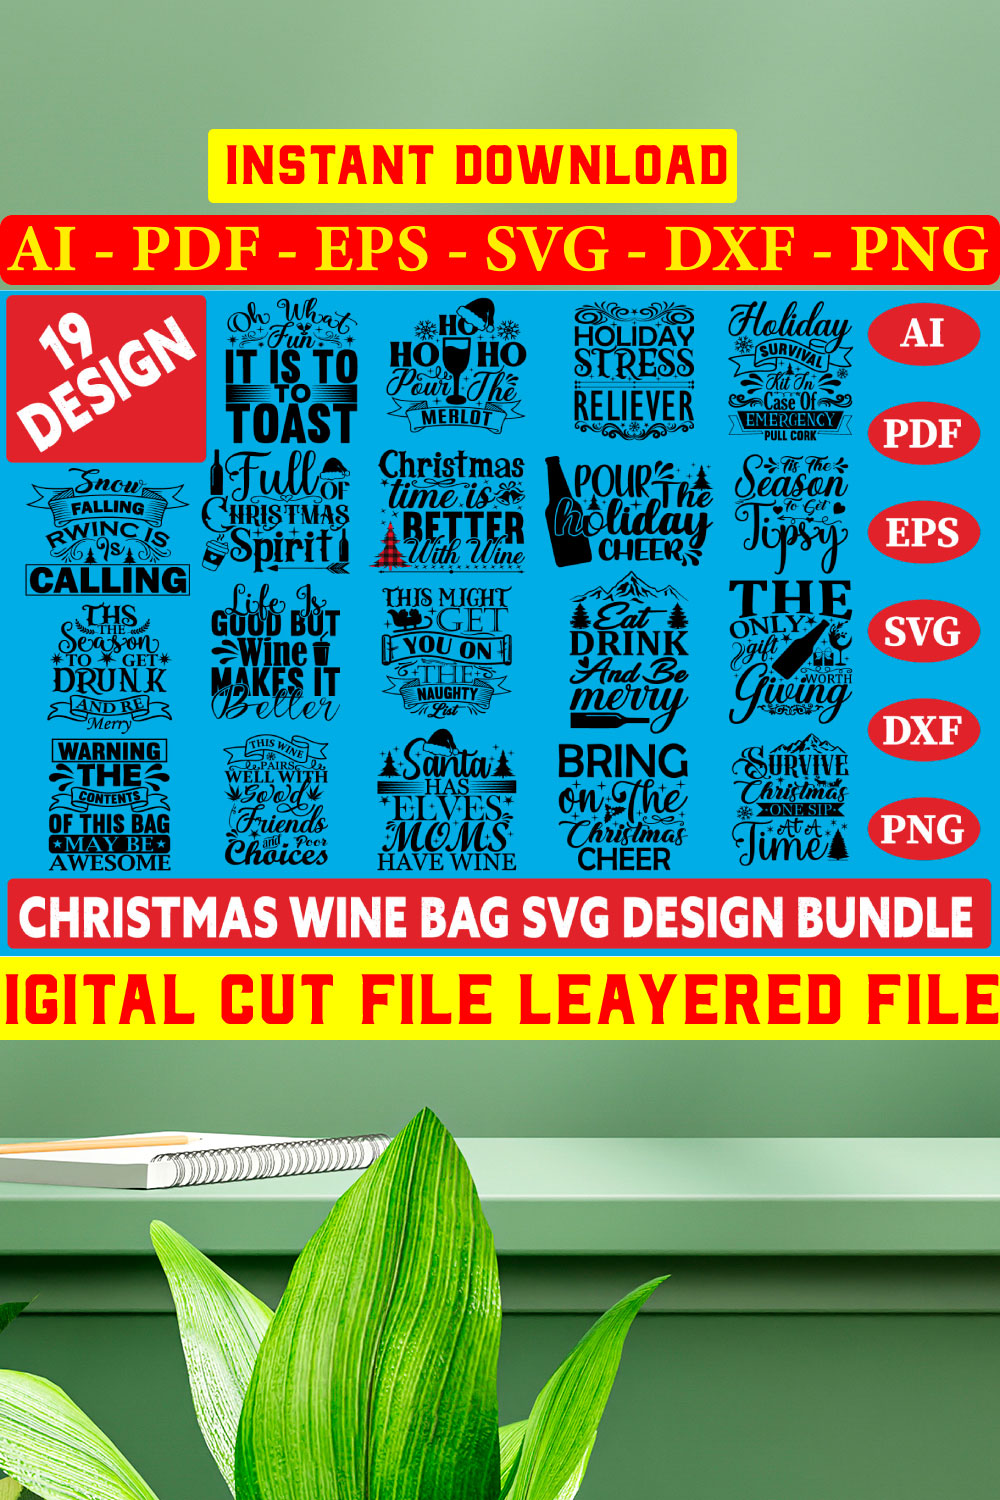 Christmas Wine Bag Svg Design Bundle pinterest preview image.